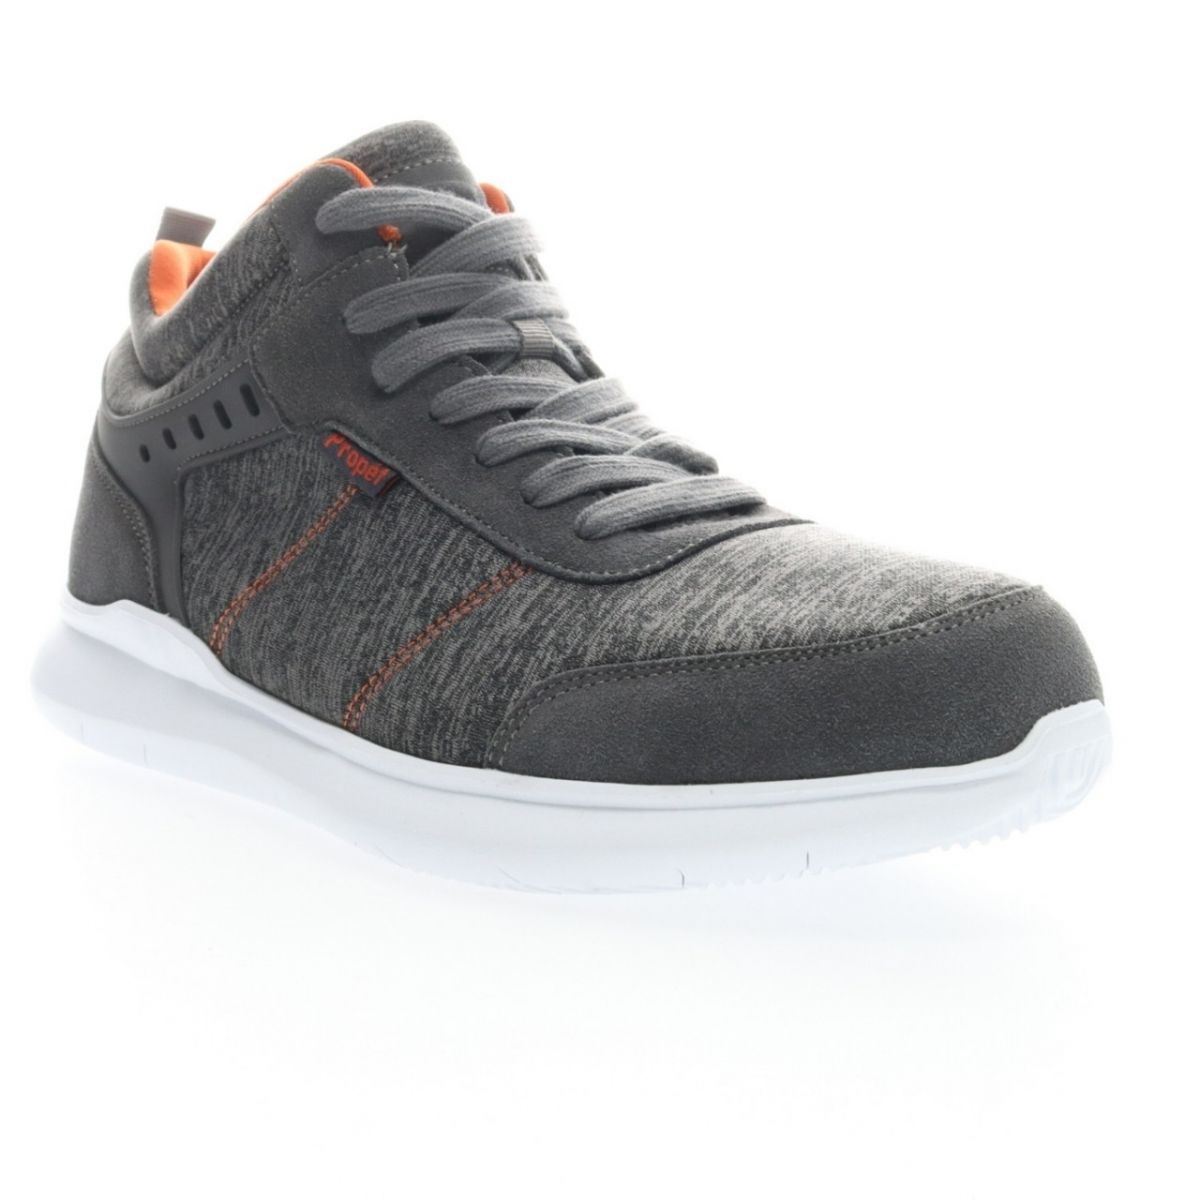 Propet Men's Viator Hi Sneaker Grey/Orange - MAA112MGOR Grey/orange - Grey/orange, 11 X-Wide